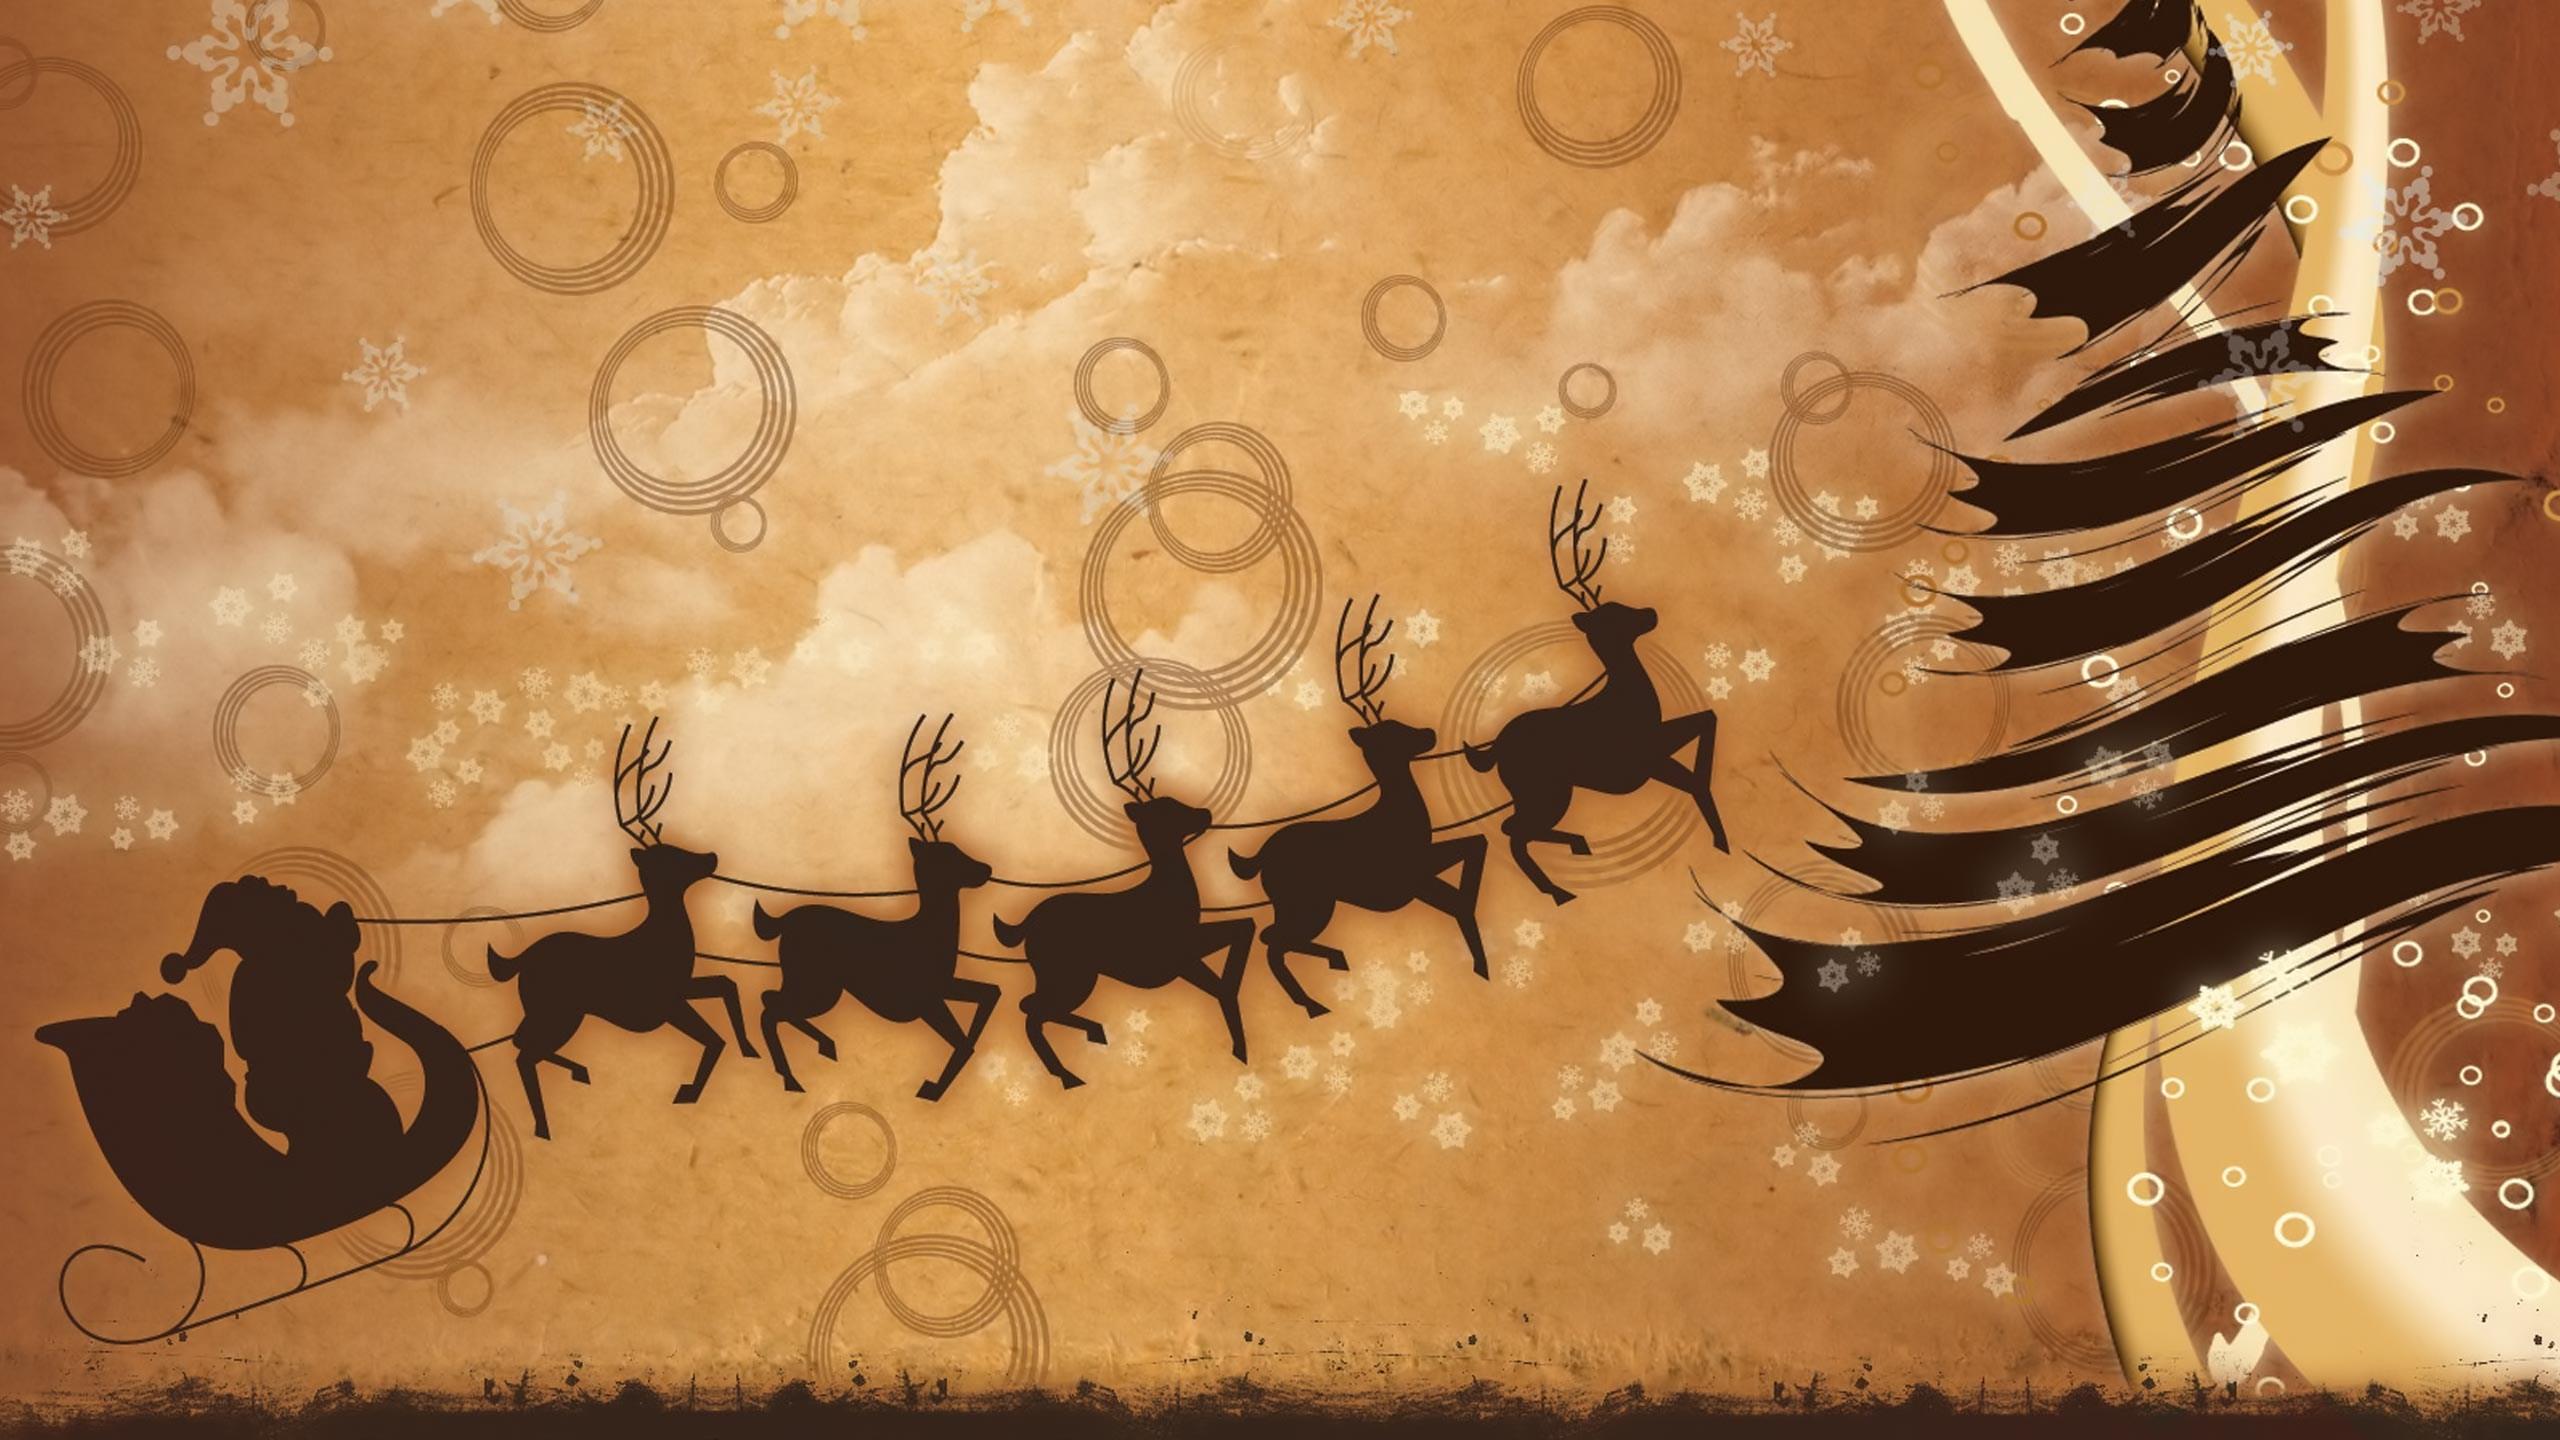 Santa in Flight Wallpaper